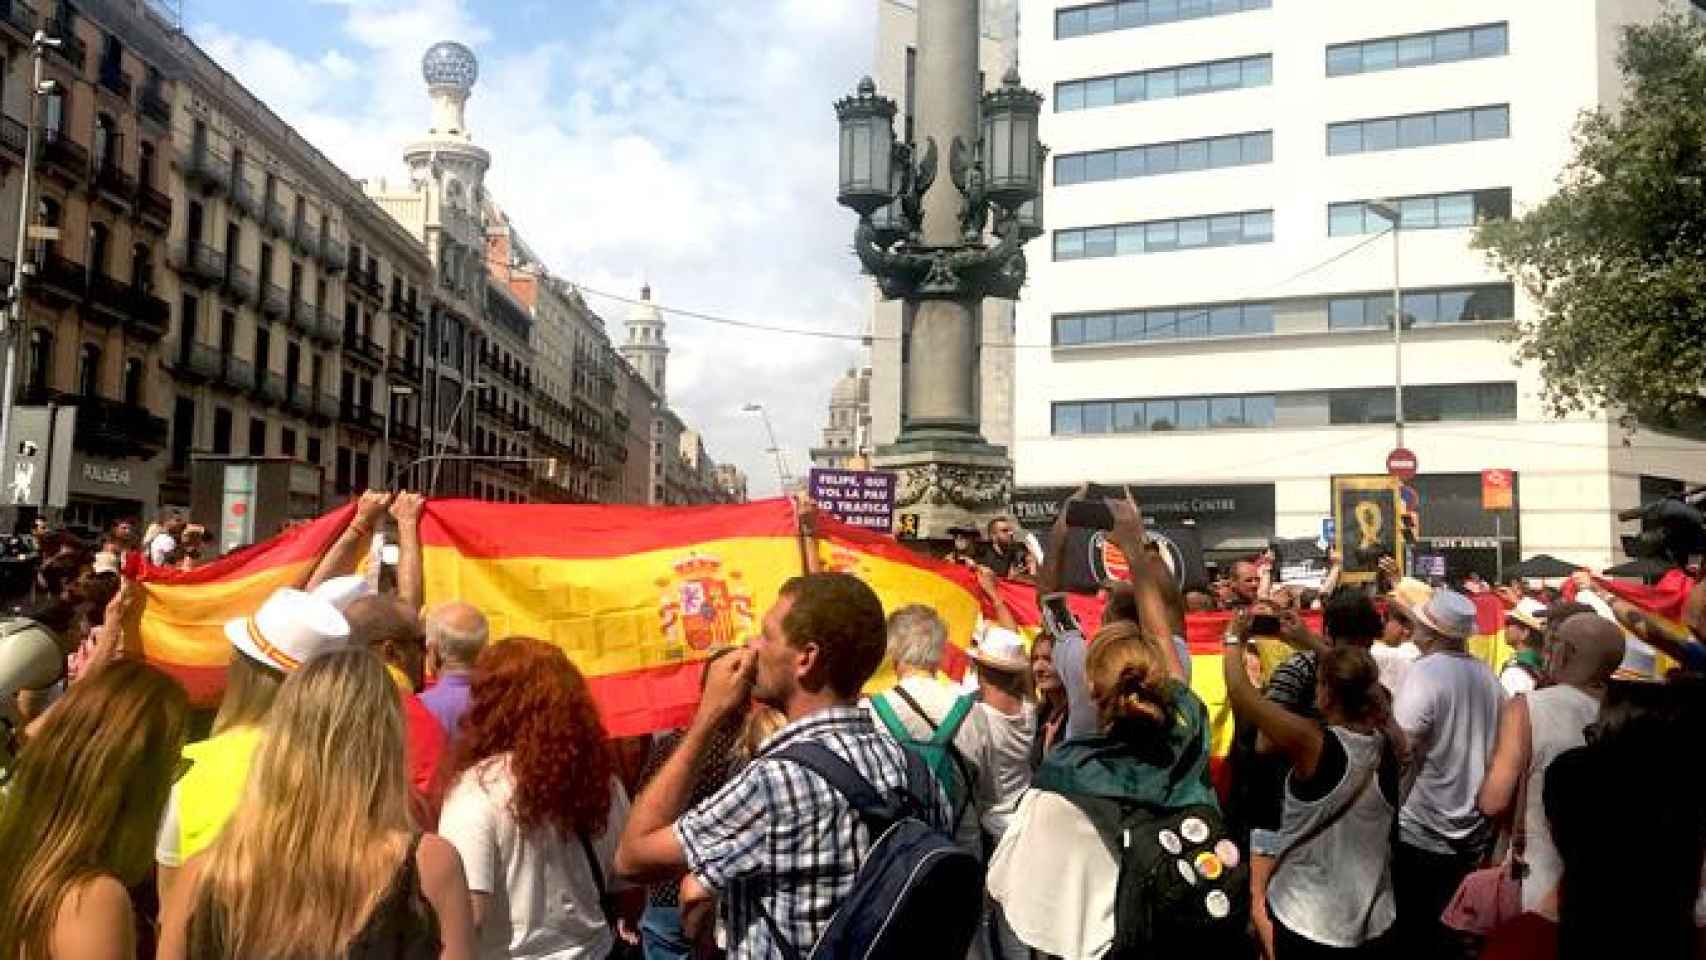 La pelea entre independentistas y constitucionalsitas en plaza Cataluña ha tenido lugar después de que terminase el acto oficial en recuerdo a las víctimas del 17A / CG